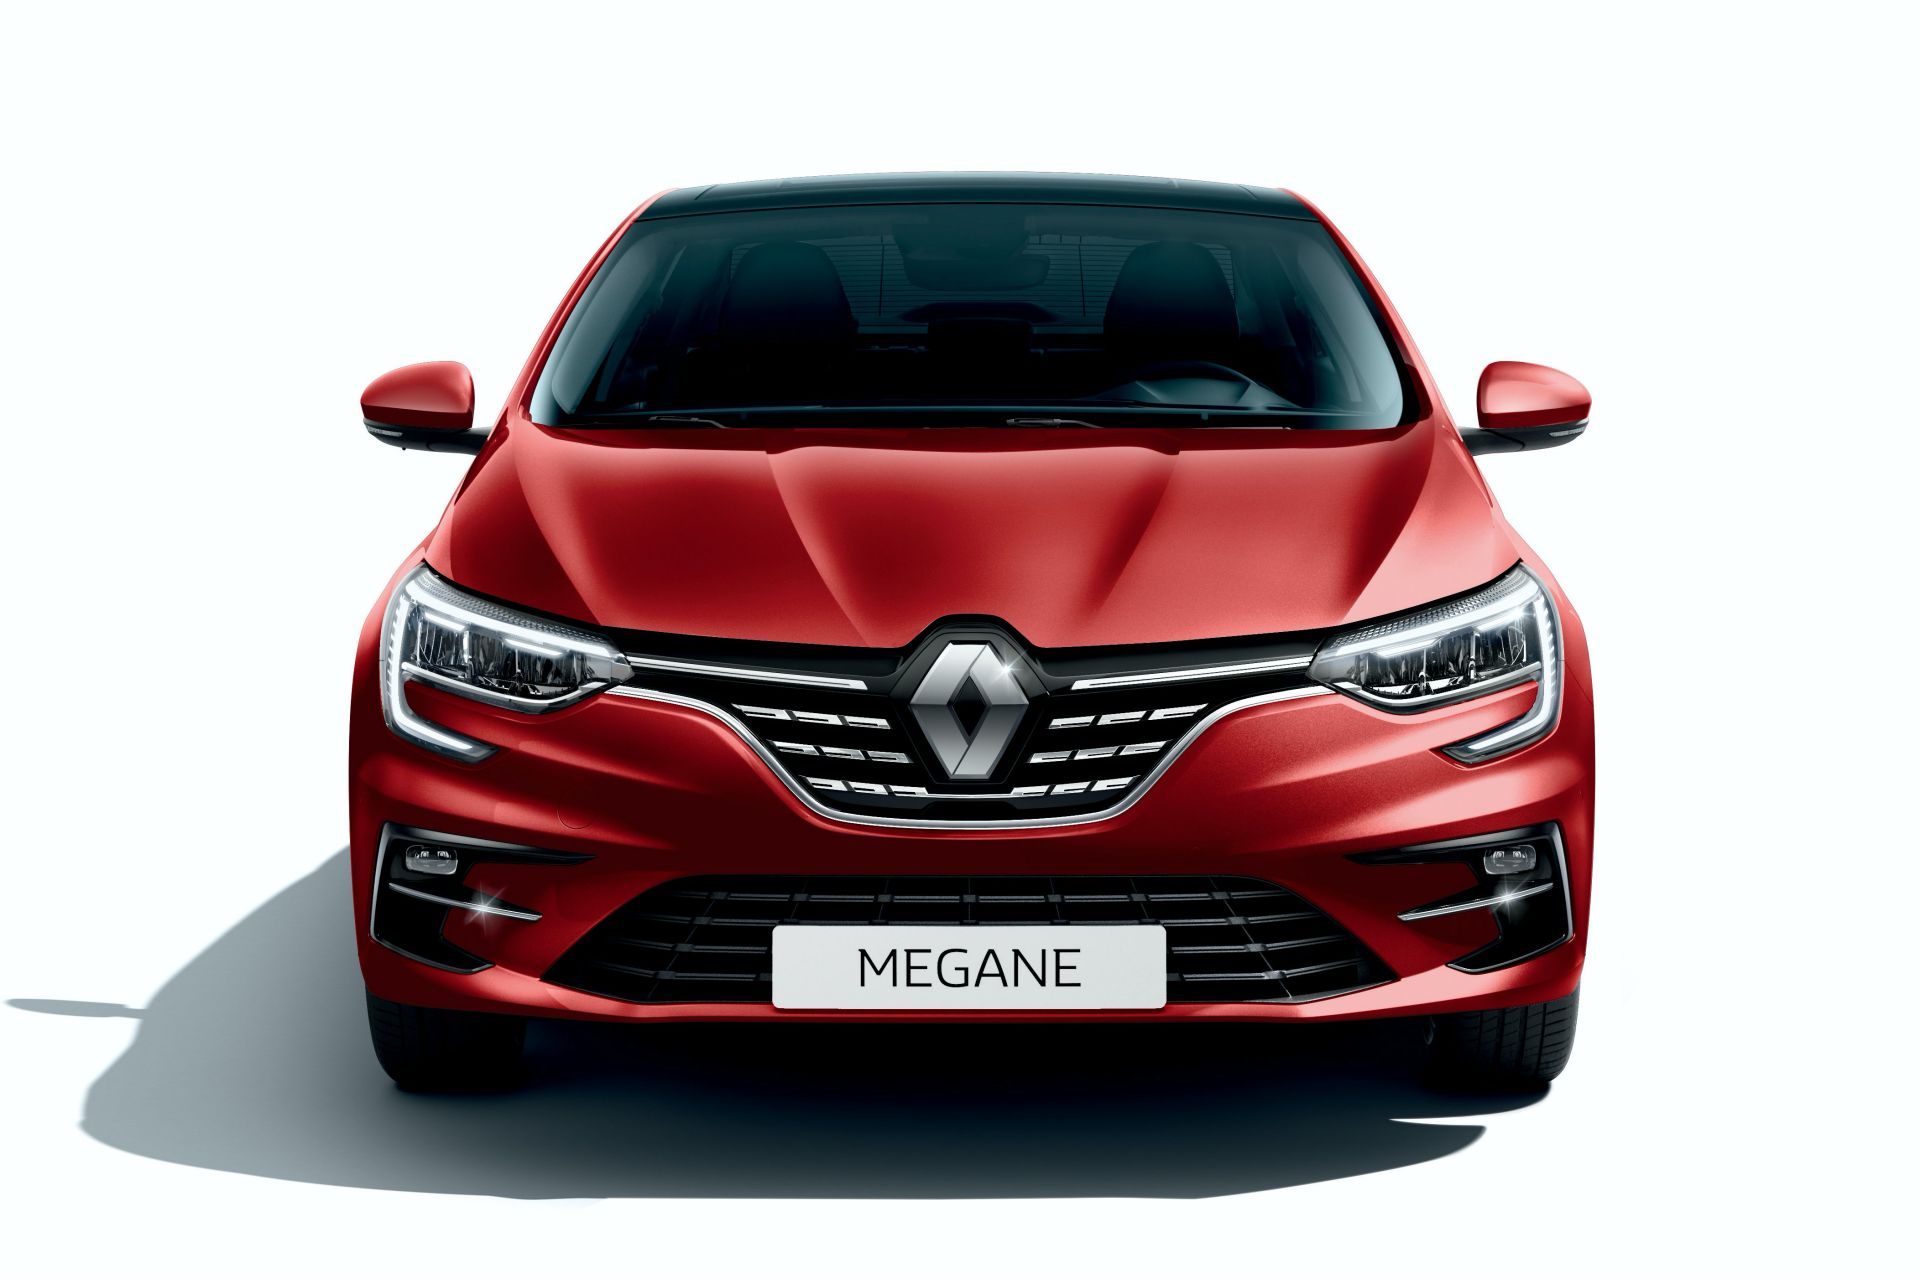 Makyajlı Megane Sedan tanıtıldı: İşte tasarımı ve özellikleri